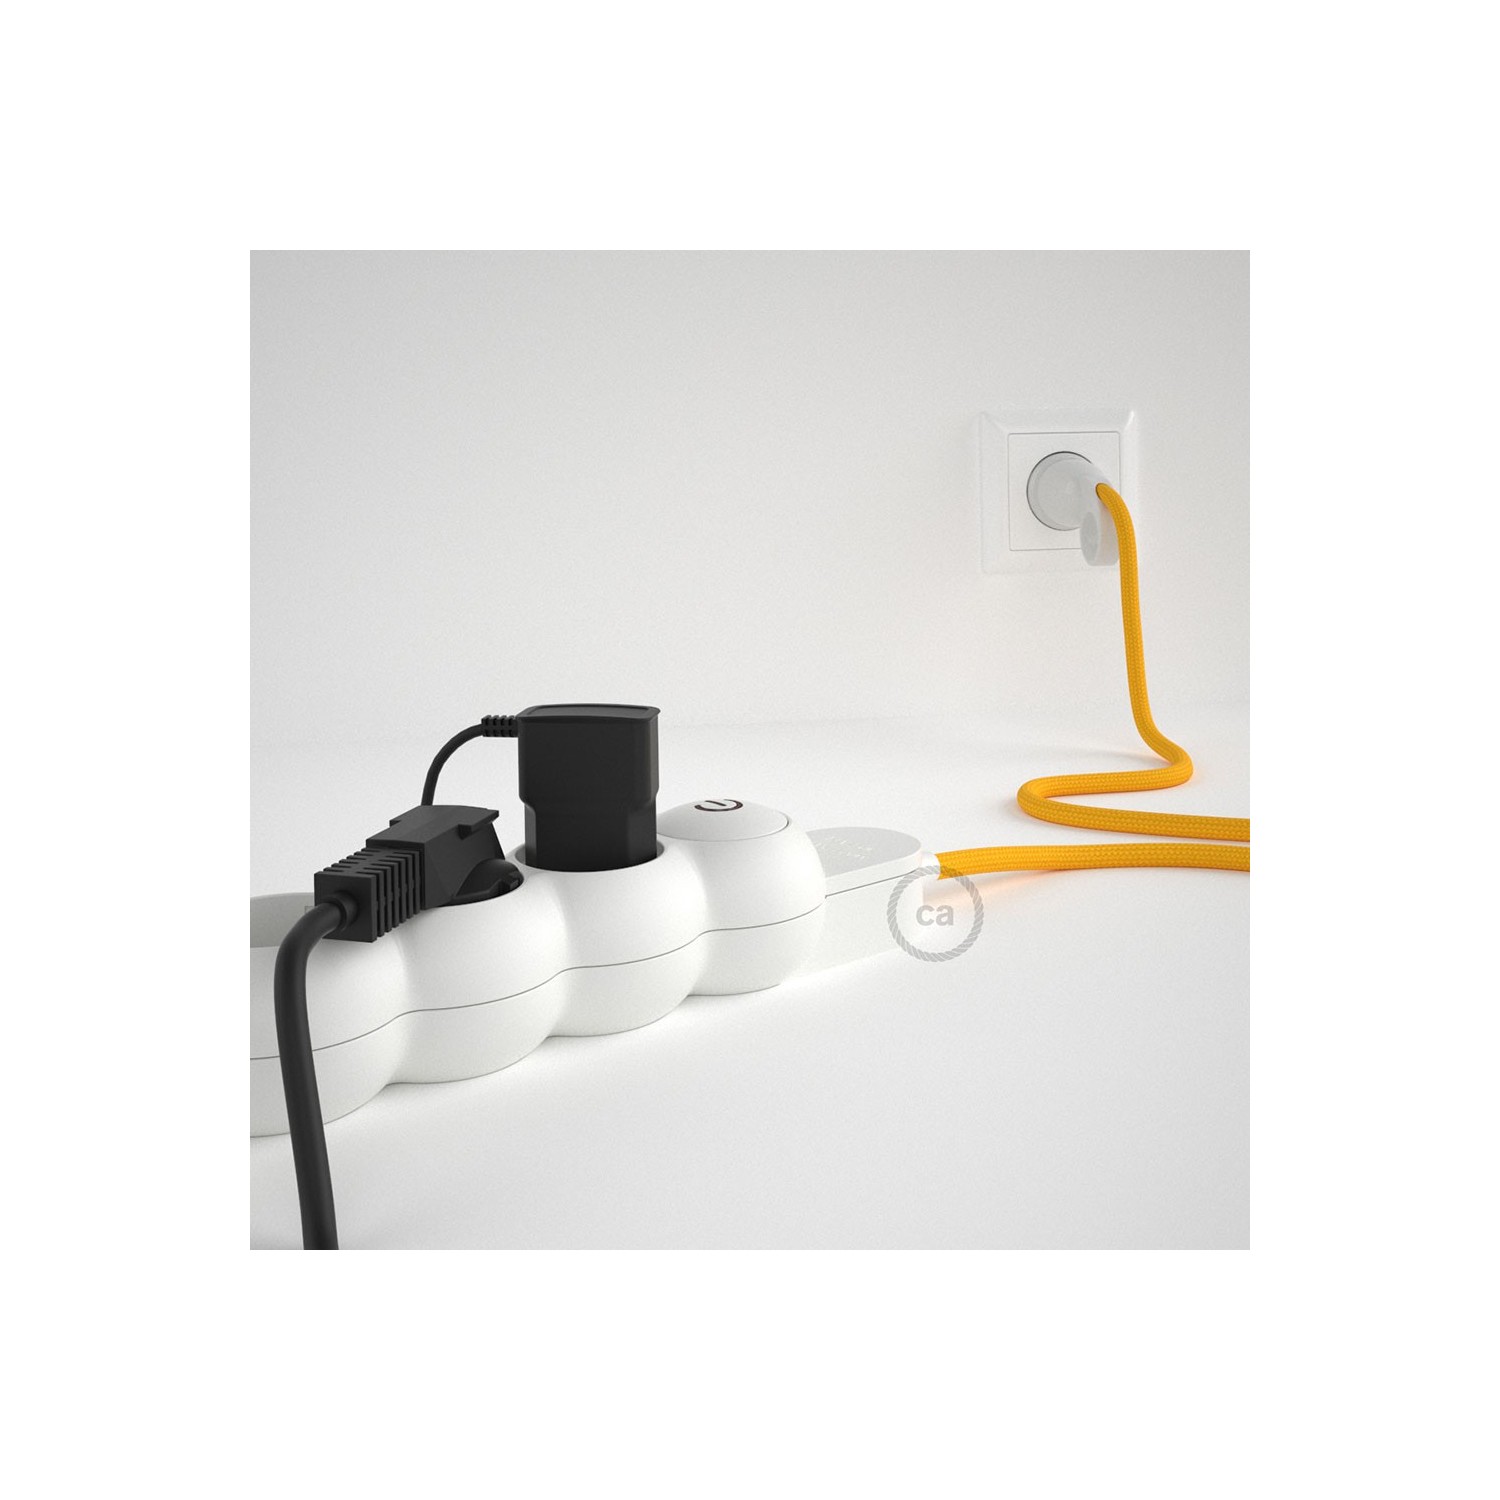 Stekkerdoos met strijkijzersnoer van gele viscose RM10 en randaarde stekker met comfortabele "ring" grip